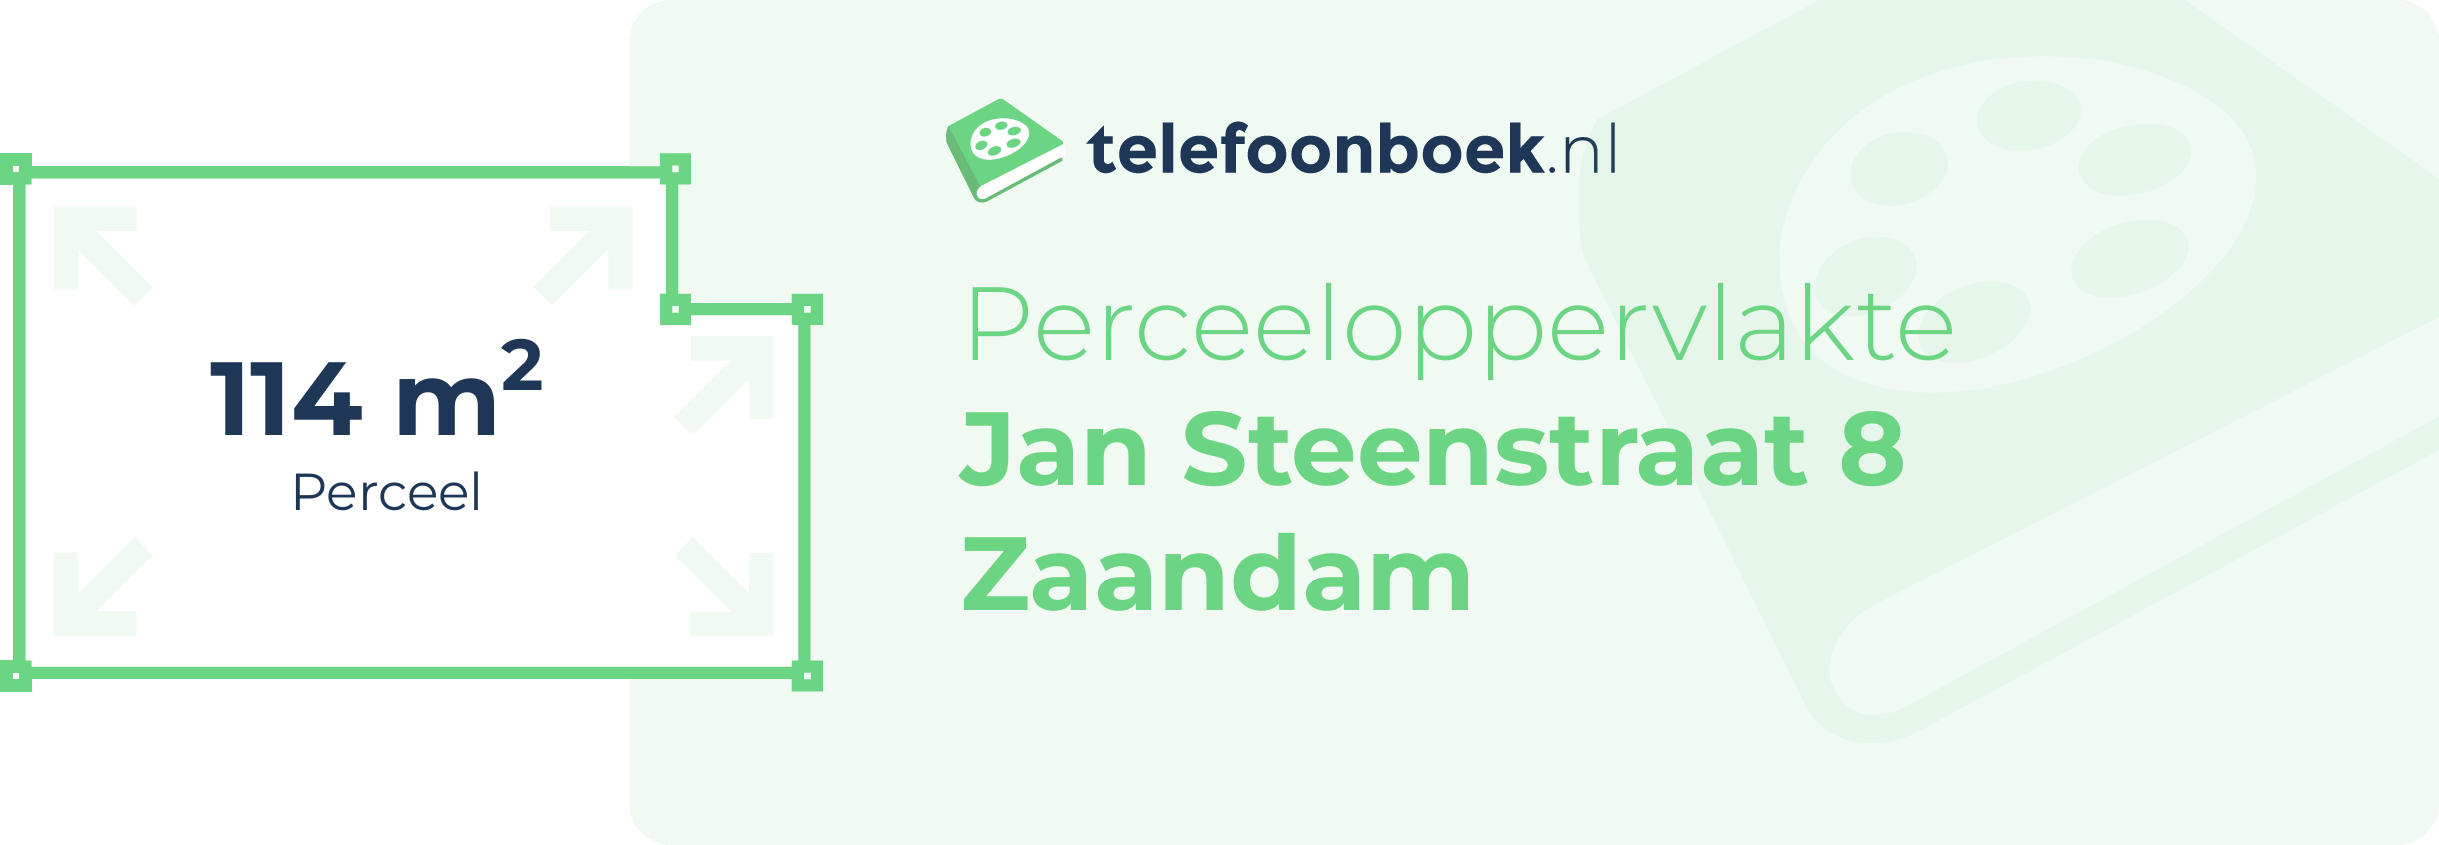 Perceeloppervlakte Jan Steenstraat 8 Zaandam